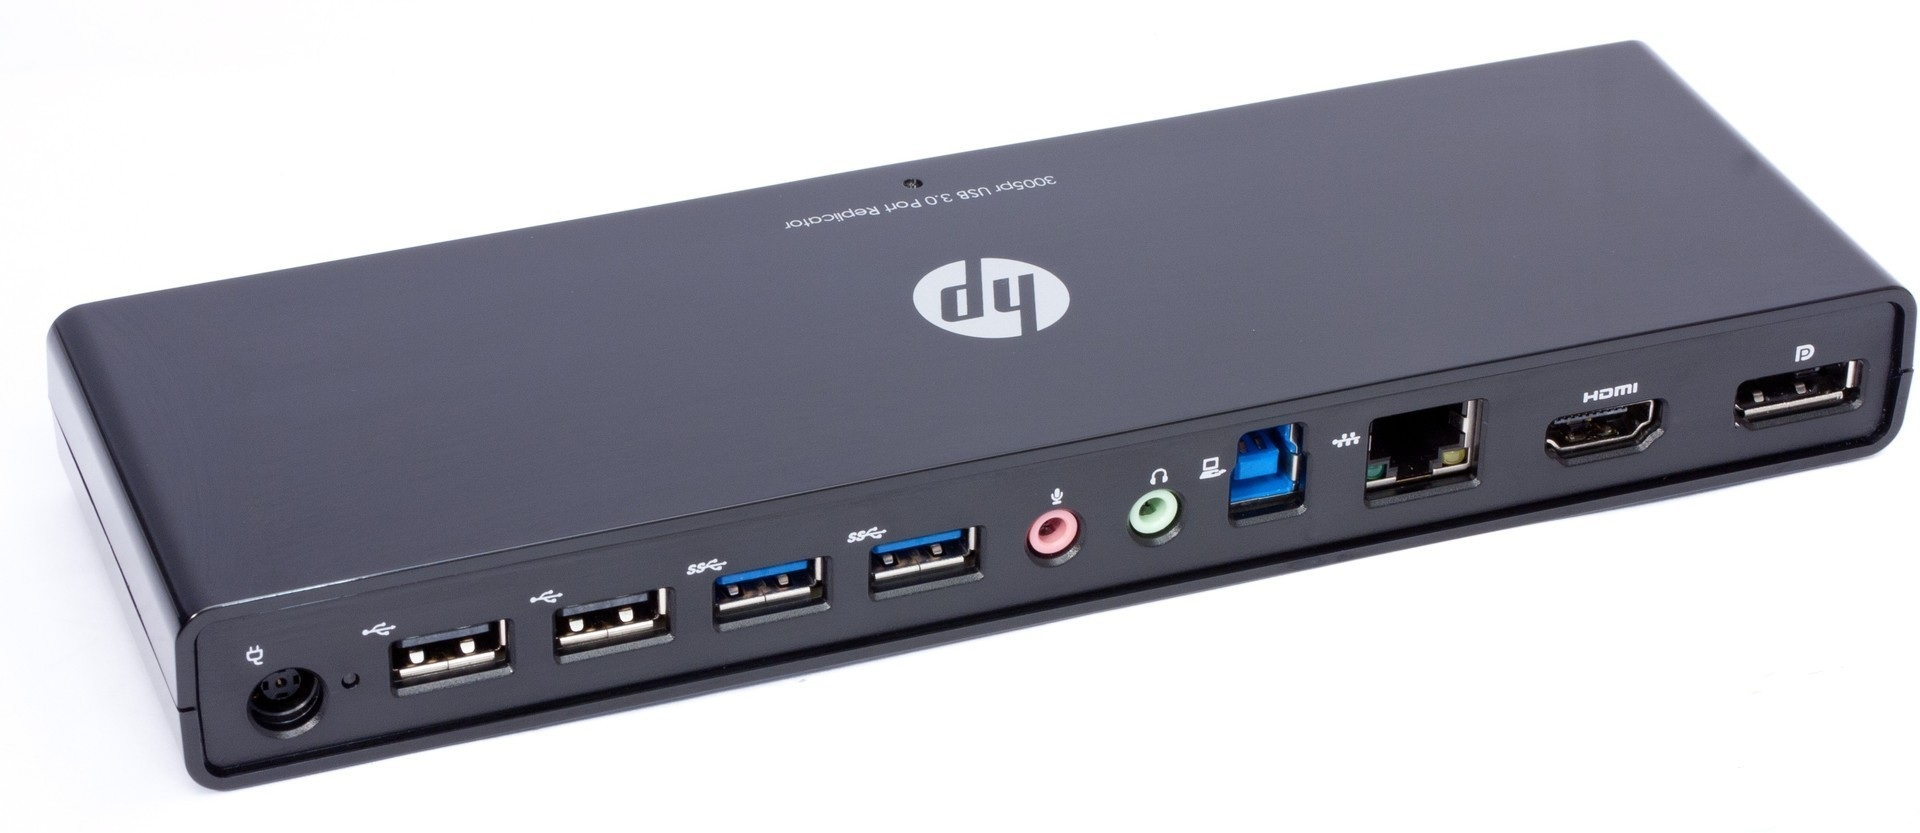 HP Notebook 3005pr USB3 Port Replicator 2x USB 3, 4x USB 2, 1x Gigbit Ethernet, HDMI, Display Port